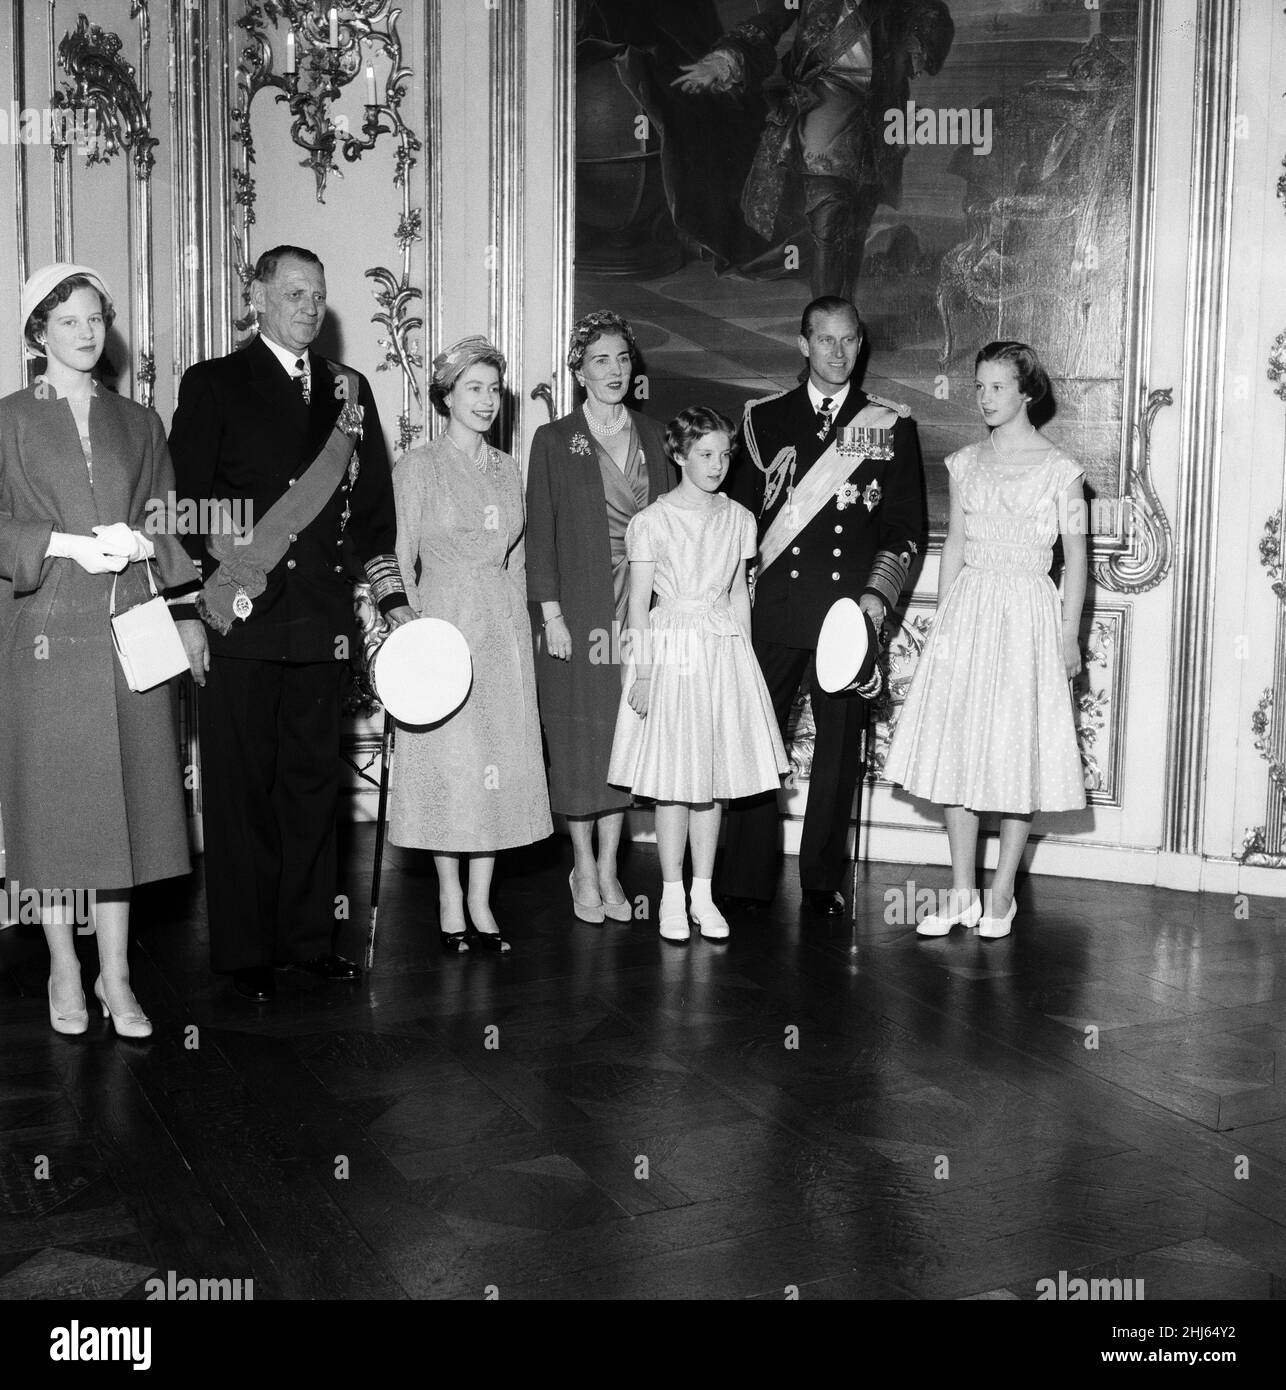 Königin Elizabeth II. Und Prinz Philip, Herzog von Edinburgh, besuchen Dänemark. Schloss Amalienborg, von links nach rechts, dänische Prinzessin Margrethe, König Frederik, Königin Elisabeth II., Königin Ingrid, Prinzessin Anne Marie, Prinz Philip und Prinzessin Benedikte. 21st Mai 1957. Stockfoto